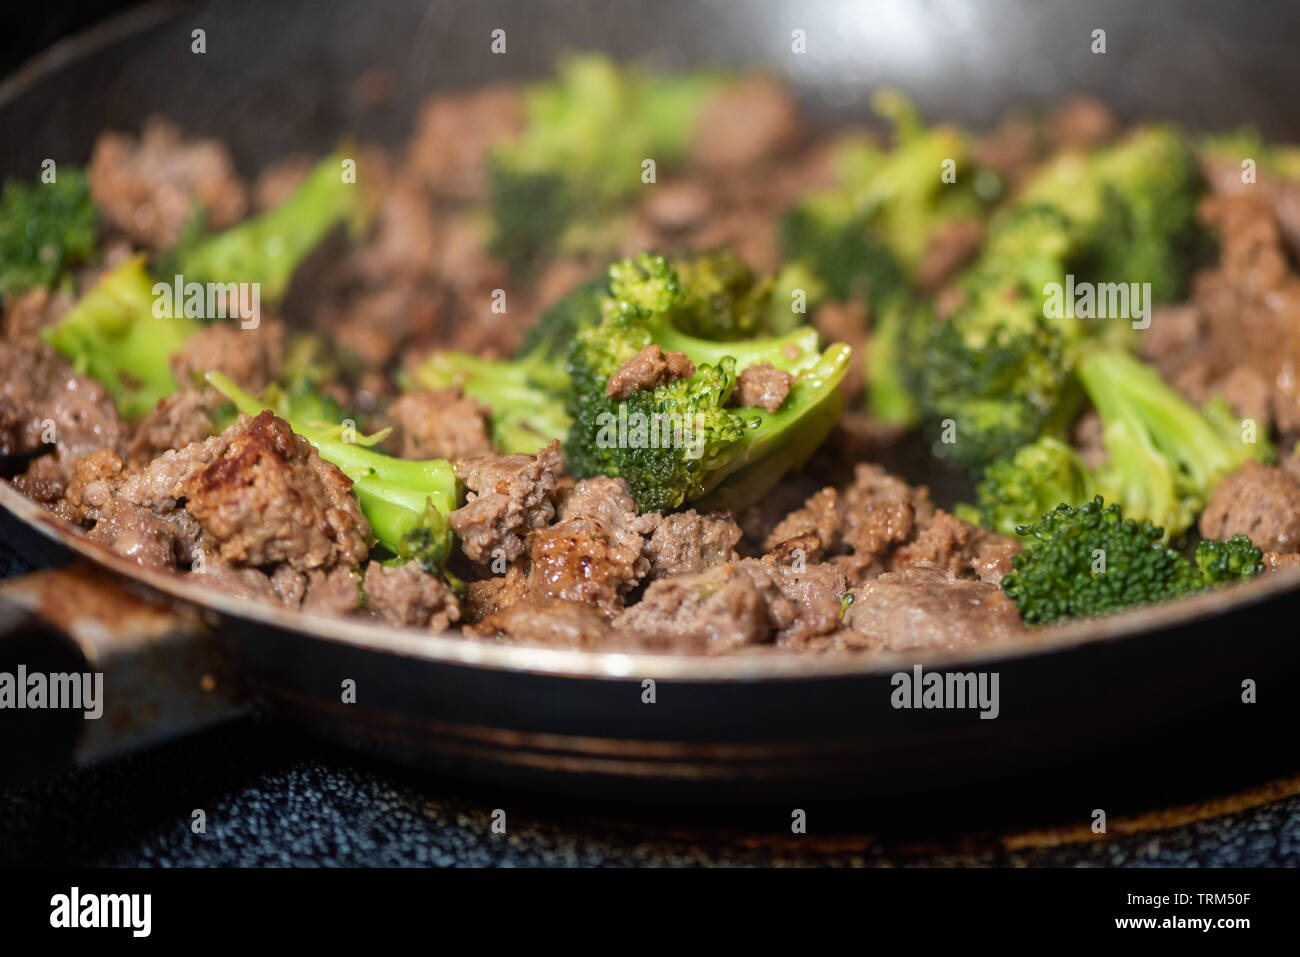 Le brocoli et la viande hachée dans une poêle Banque D'Images